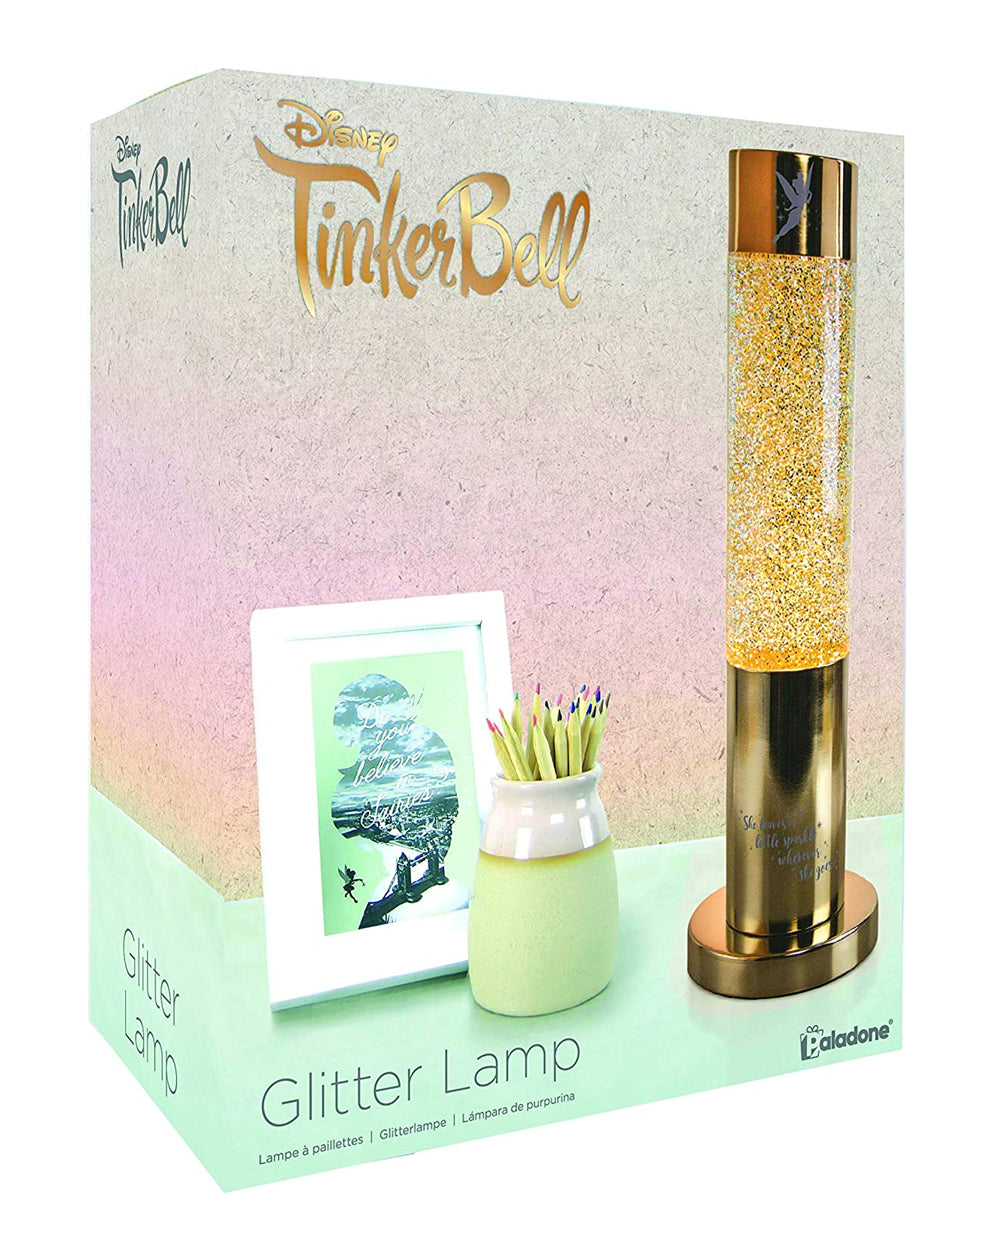 TINKER BELL GLITTER LAMP.